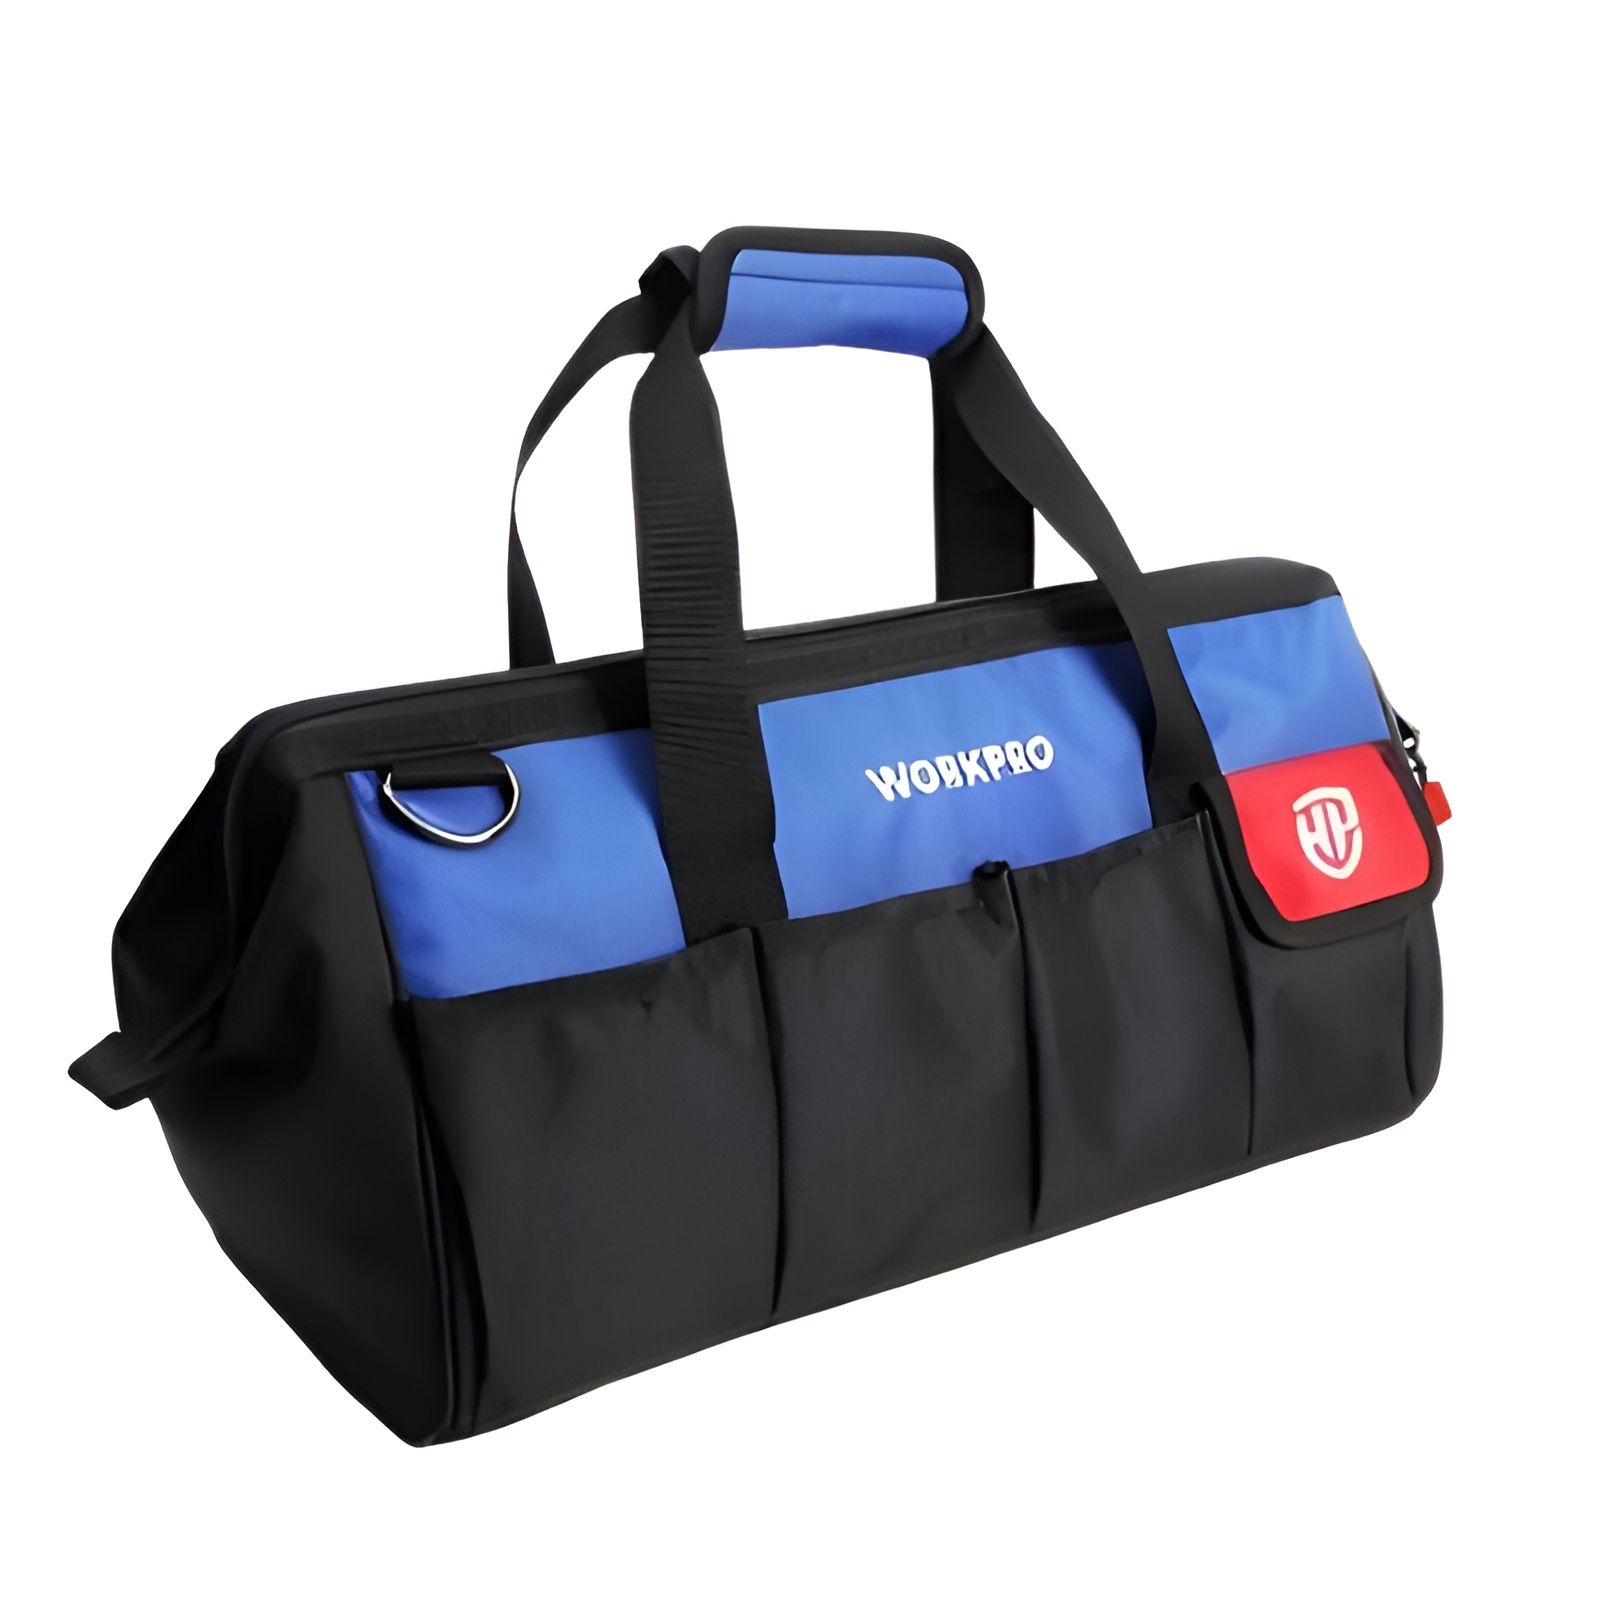  Túi đựng dụng cụ bằng vải dệt, kích thước 300mm (12 inches)
Workpro - WP281003 